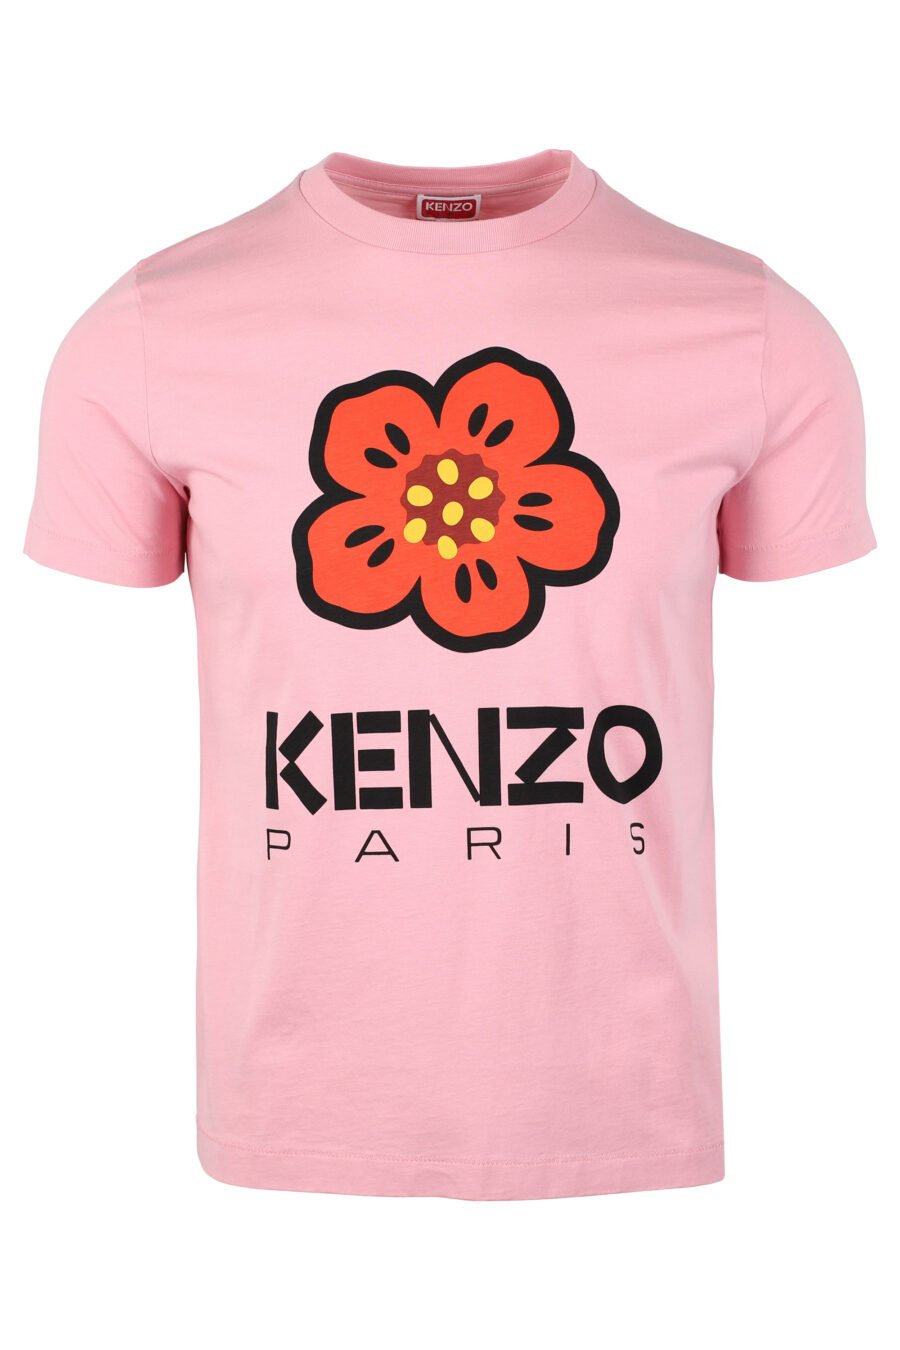 T-shirt cor-de-rosa com maxilogo de flores cor de laranja - IMG 4644